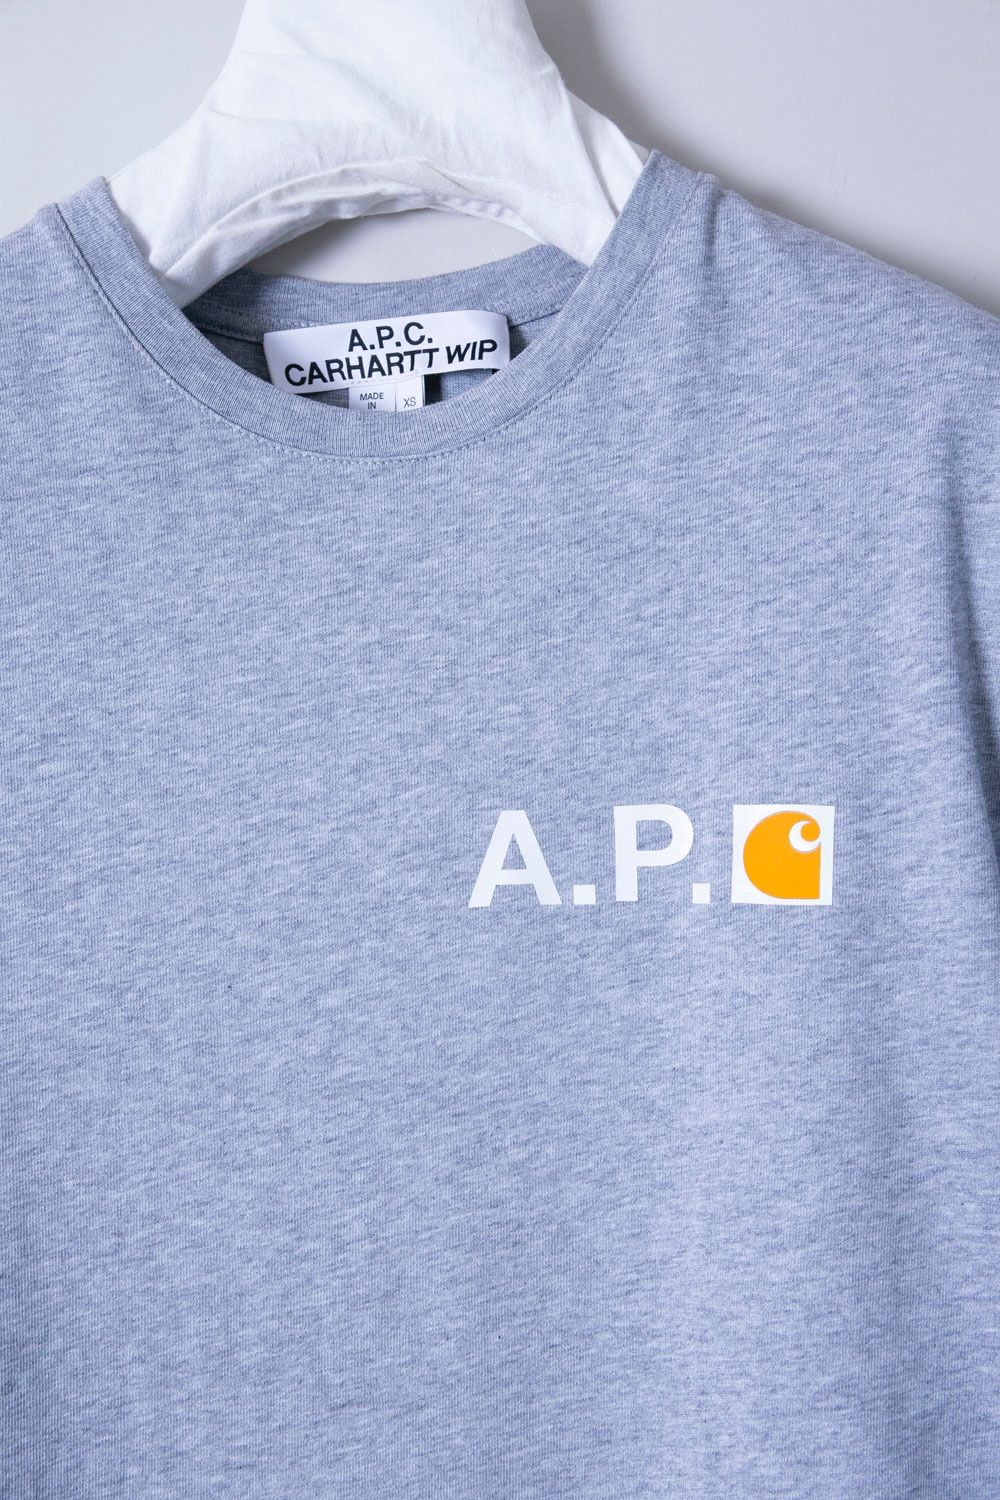 A.P.C. × CARHARTT WIP アーペーセー×カーハート Tシャツ - メルカリ